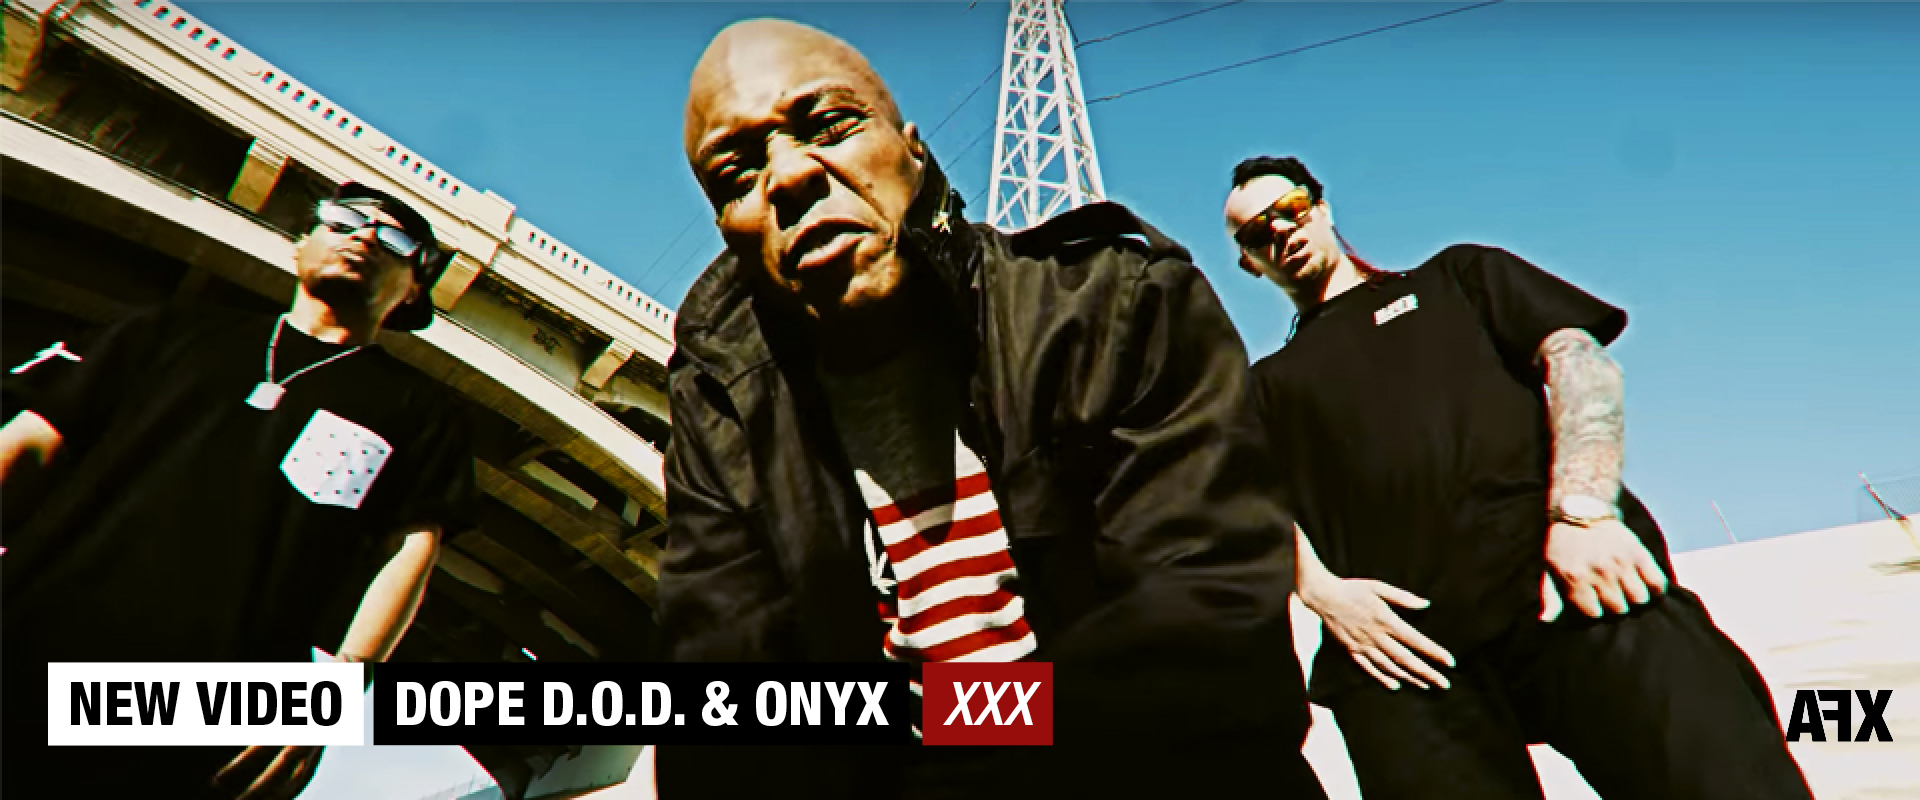 DOPE D.O.D & ONYX : NOUVELLE VIDEO « XXX »